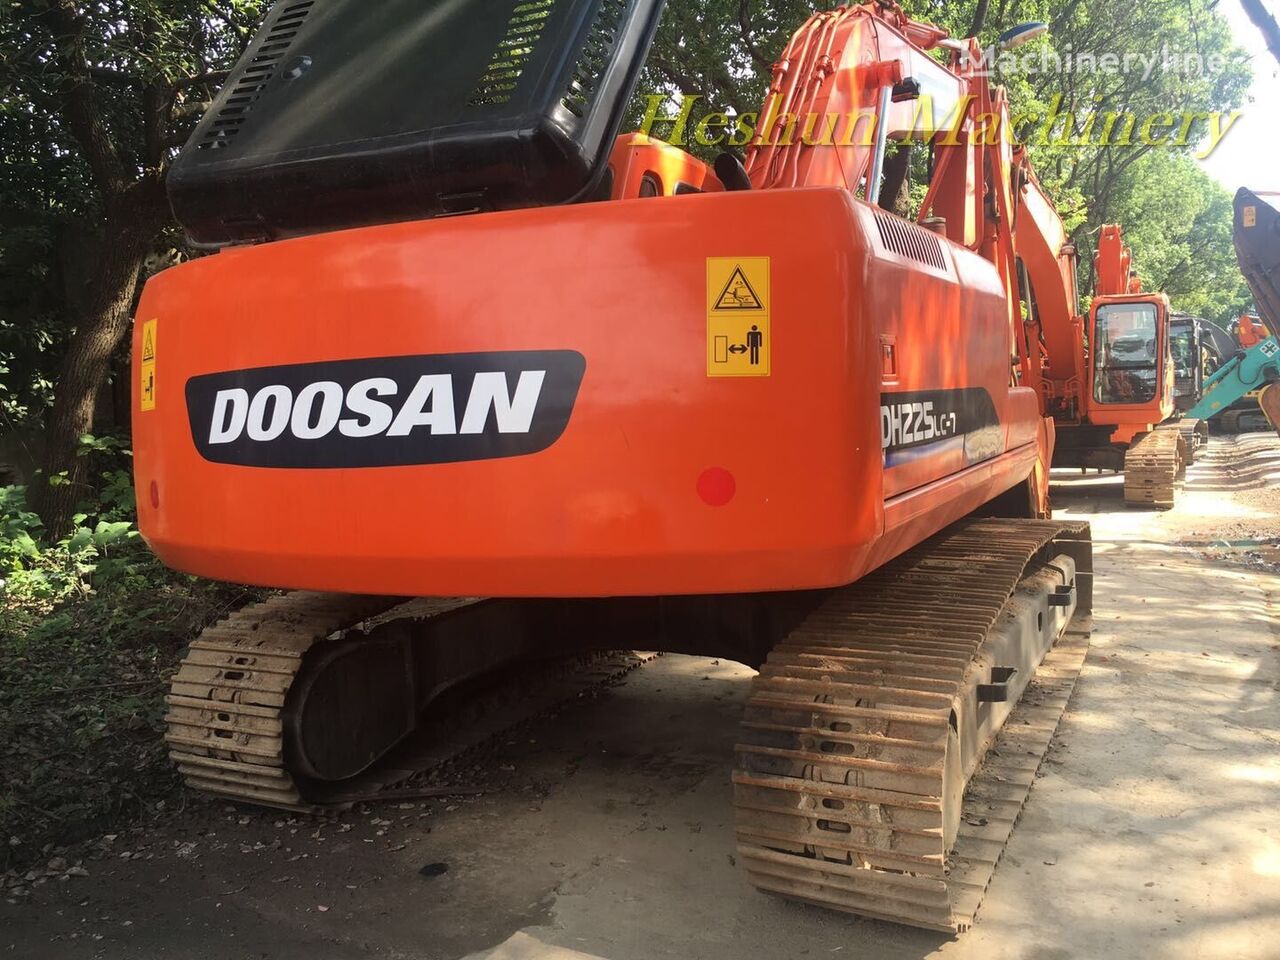 DOOSAN DH225 tracked excavator